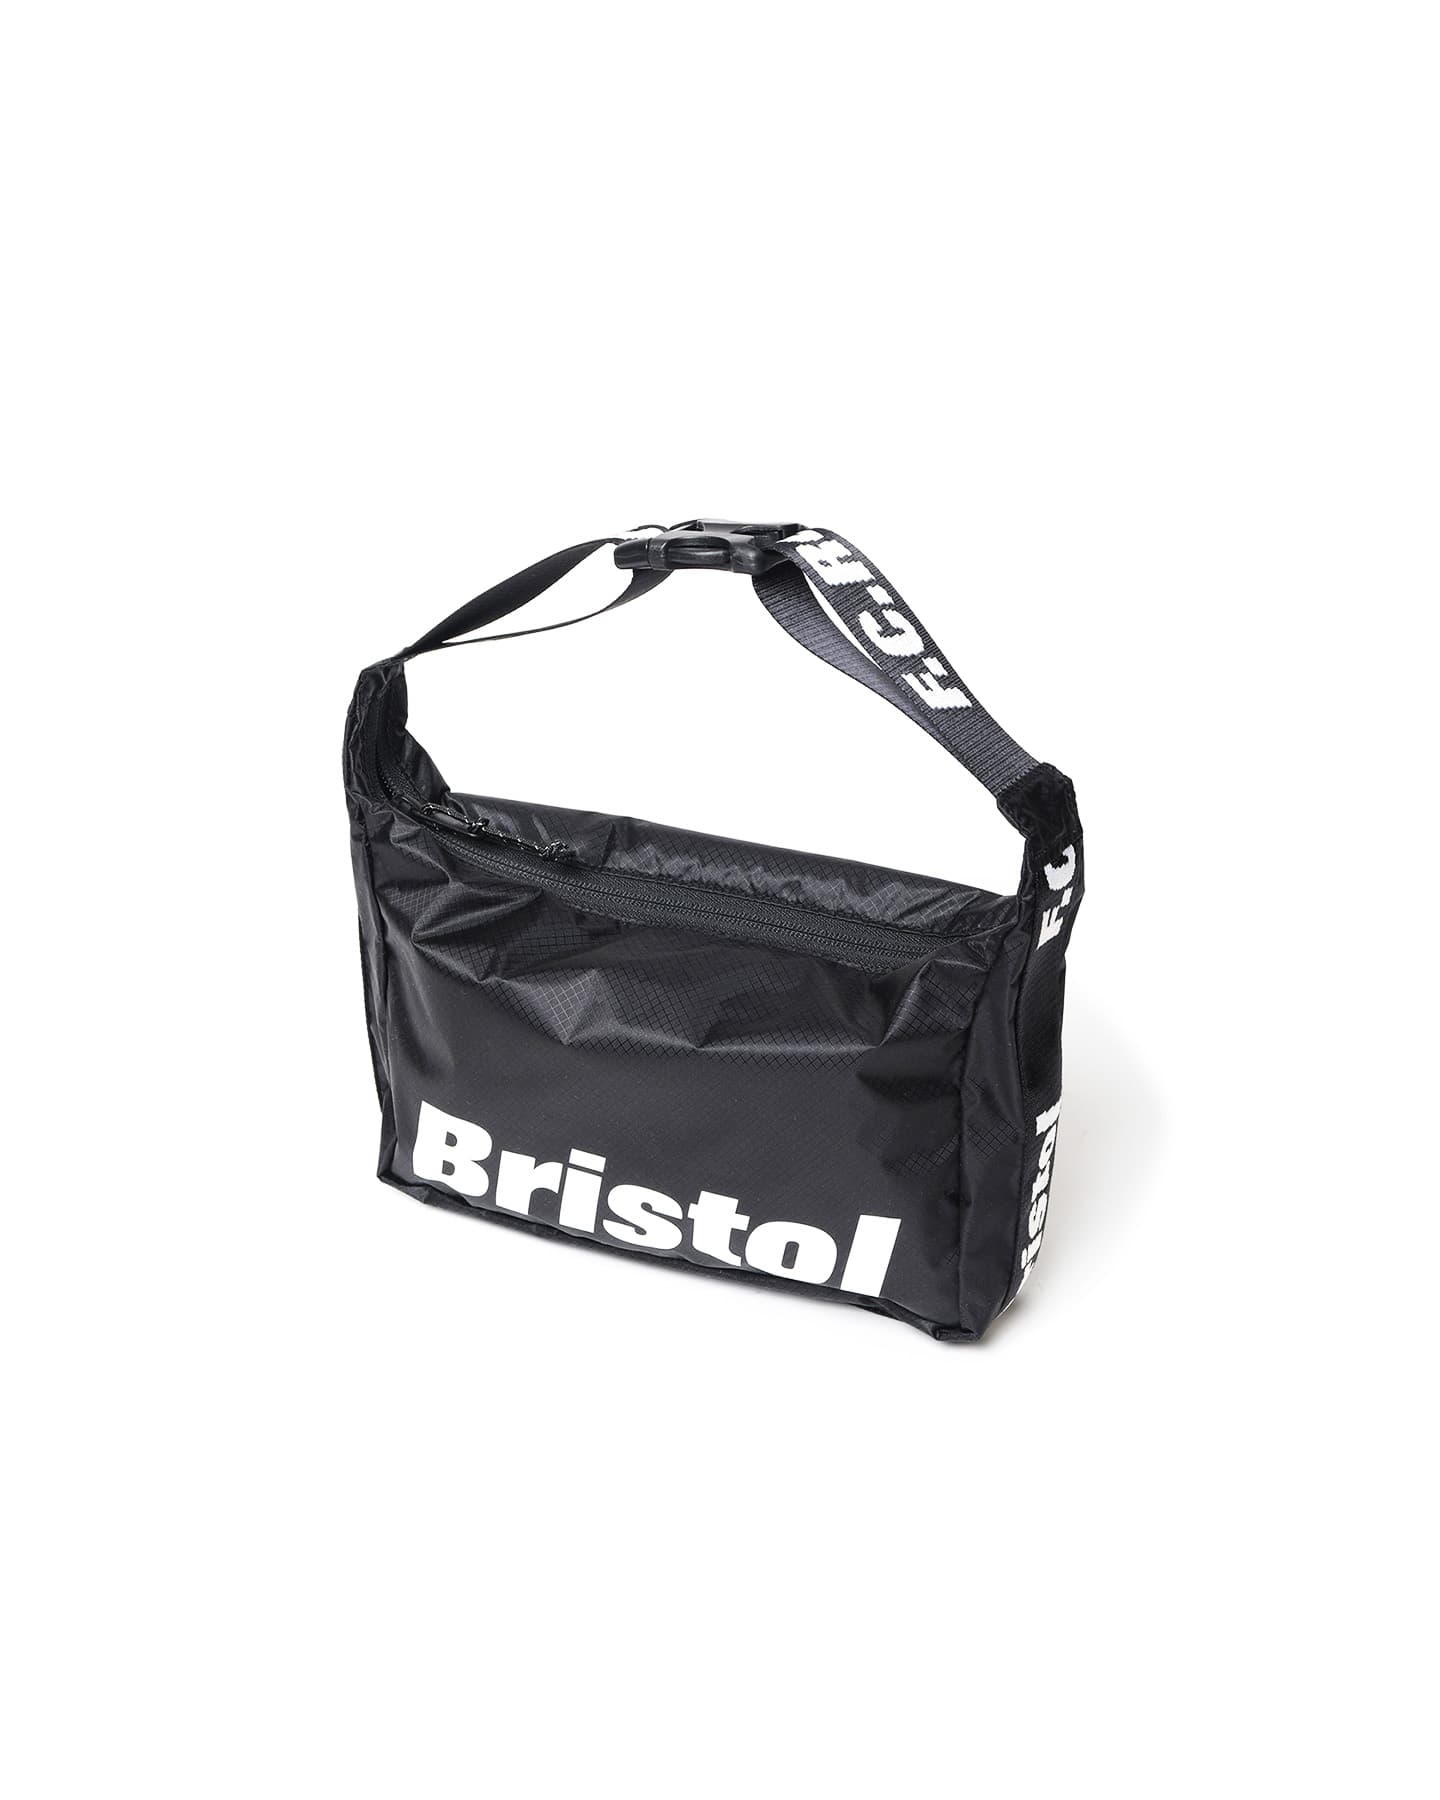 新品 F.C. REAL BRISTOL SMALL SHOULDER BAG - ショルダーバッグ